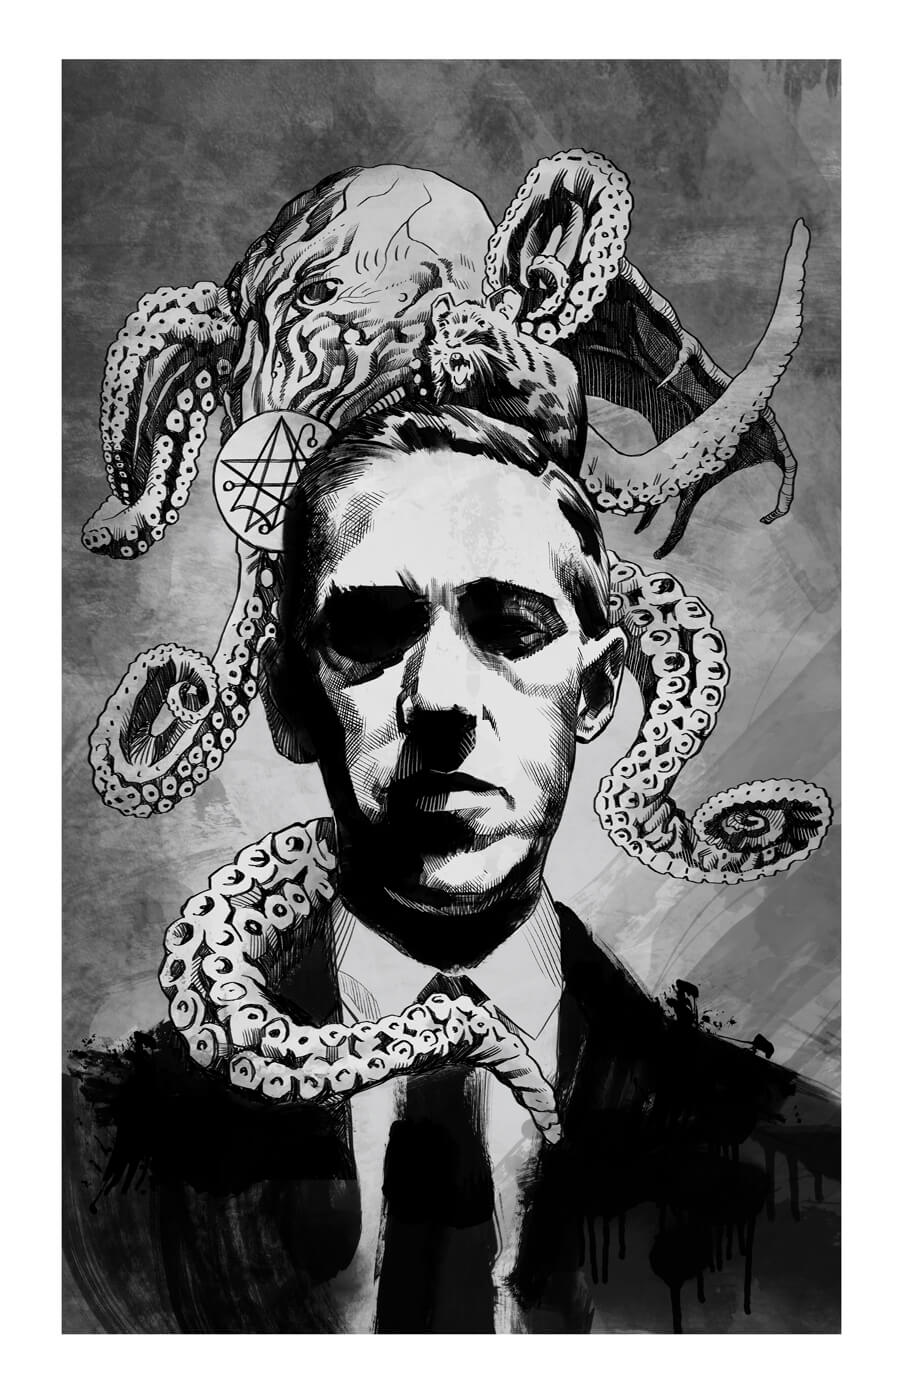 O, dwa dni temu bya rocznica mierci H.P. Lovecrafta